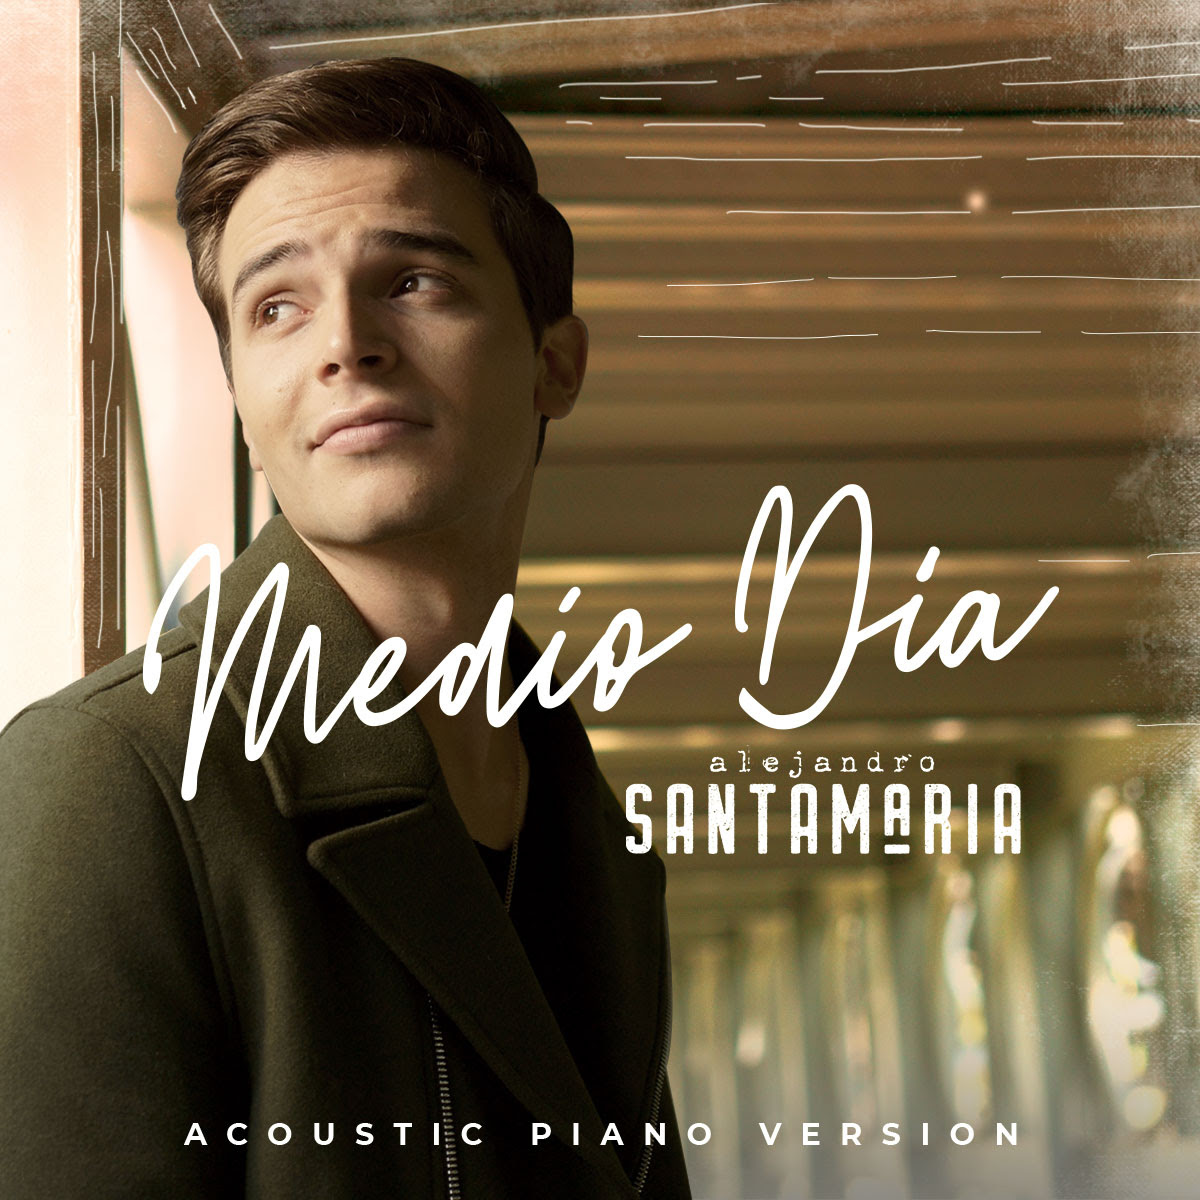 Alejandro santamaría estrena versión acústica en piano del sencillo “Medio día”